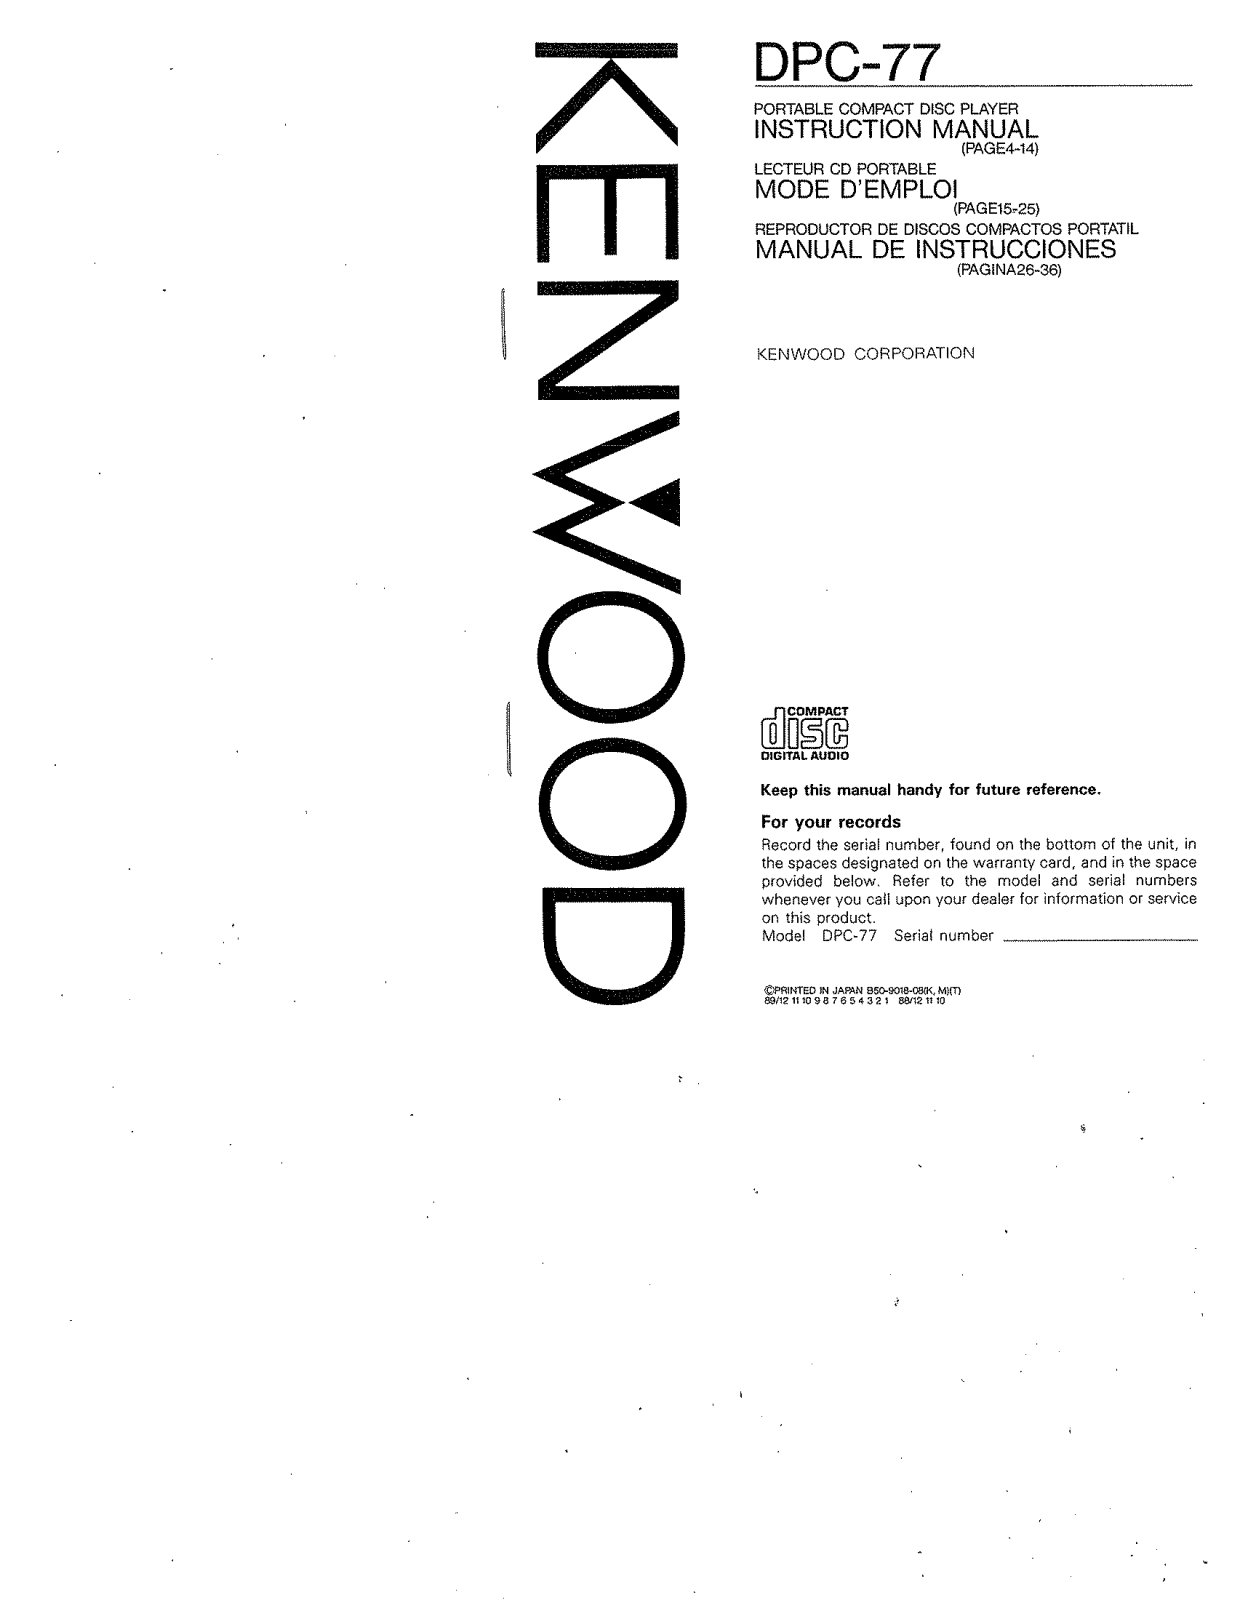 Kenwood DPC-77 Owner's Manual